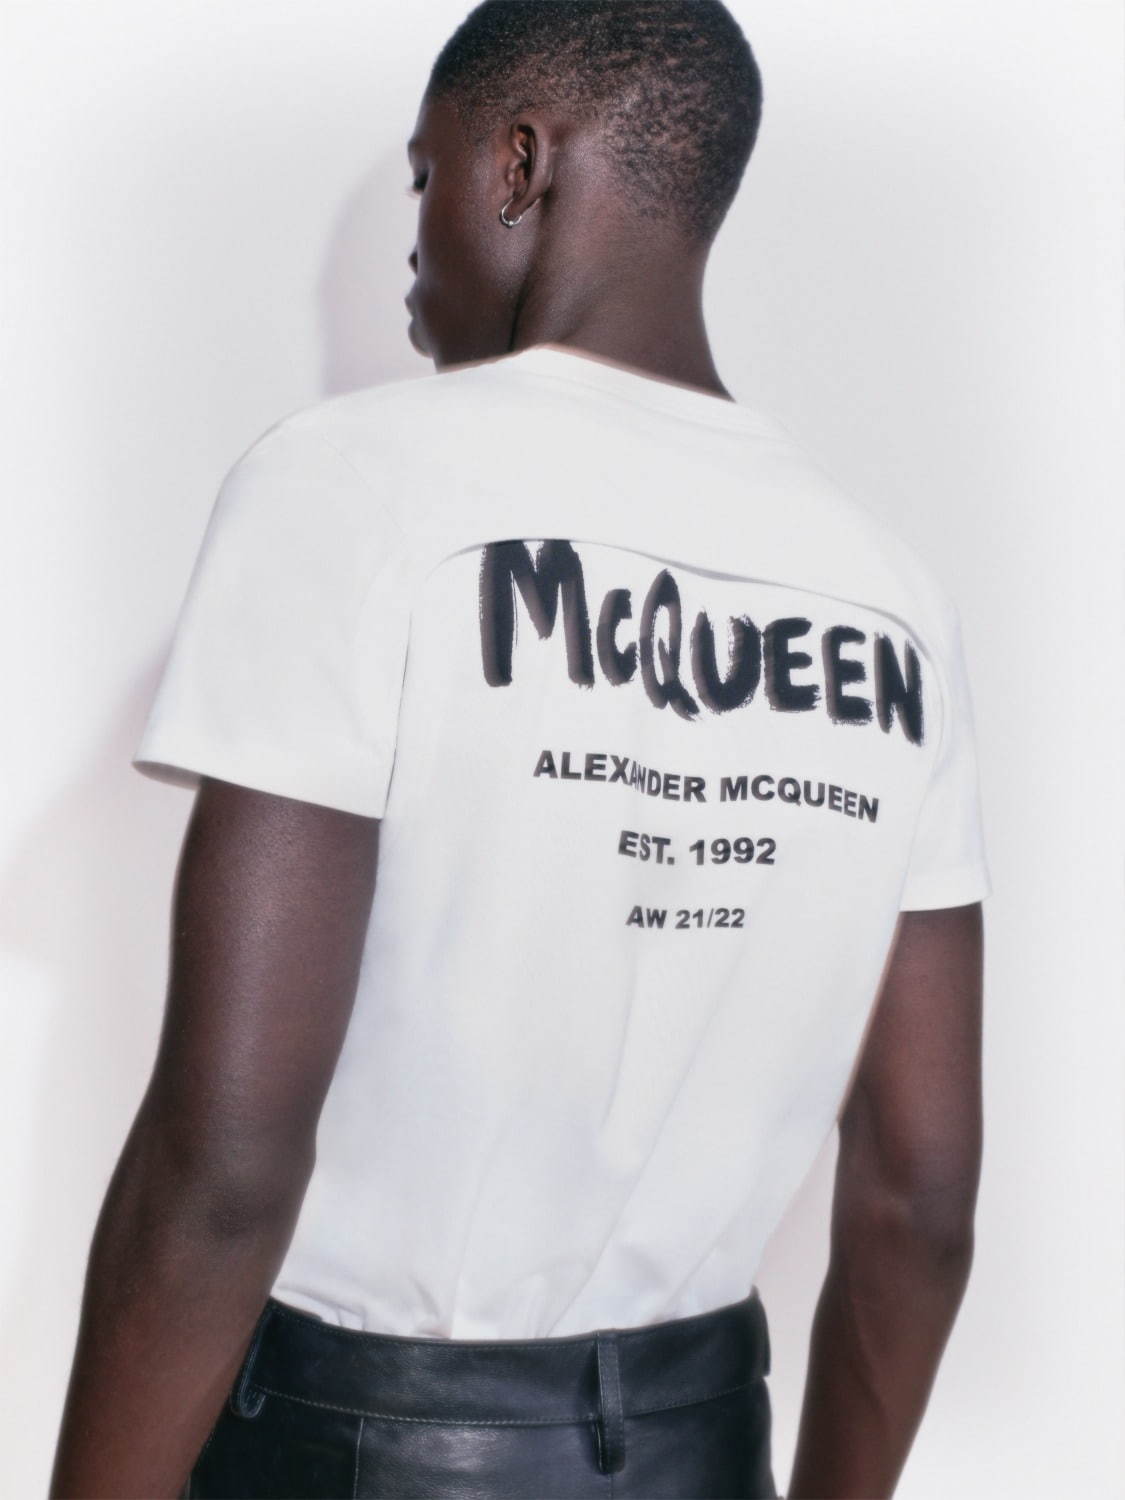 アレキサンダー・マックイーン(Alexander McQueen) 2021年プレフォールメンズコレクション  - 写真15